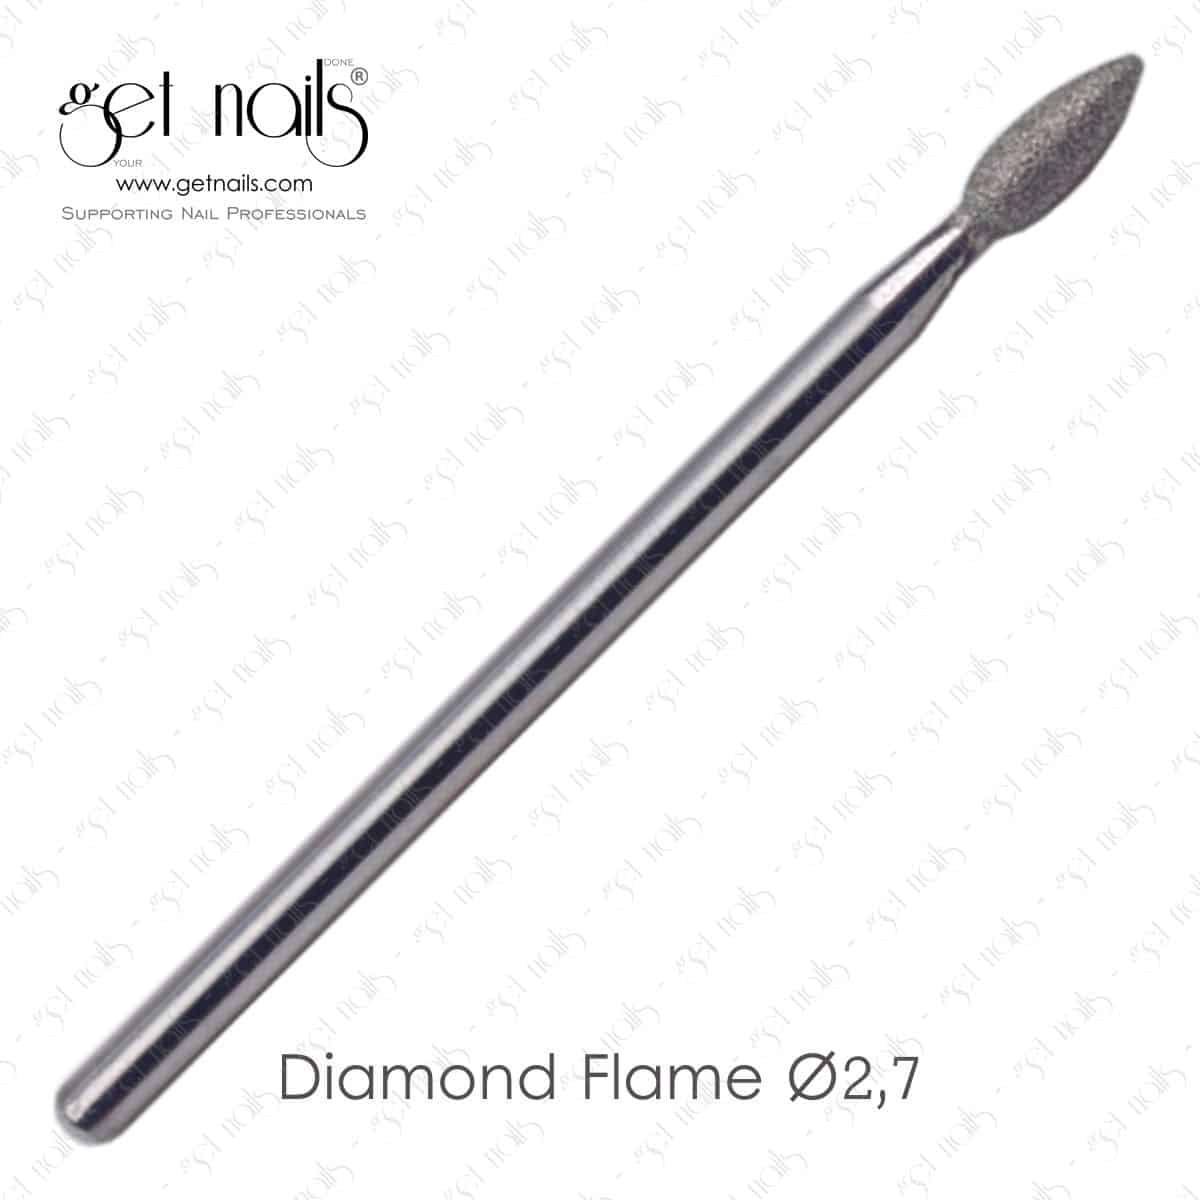 Get Nails Austria - Marószerszám Diamond Flame Ø2,7